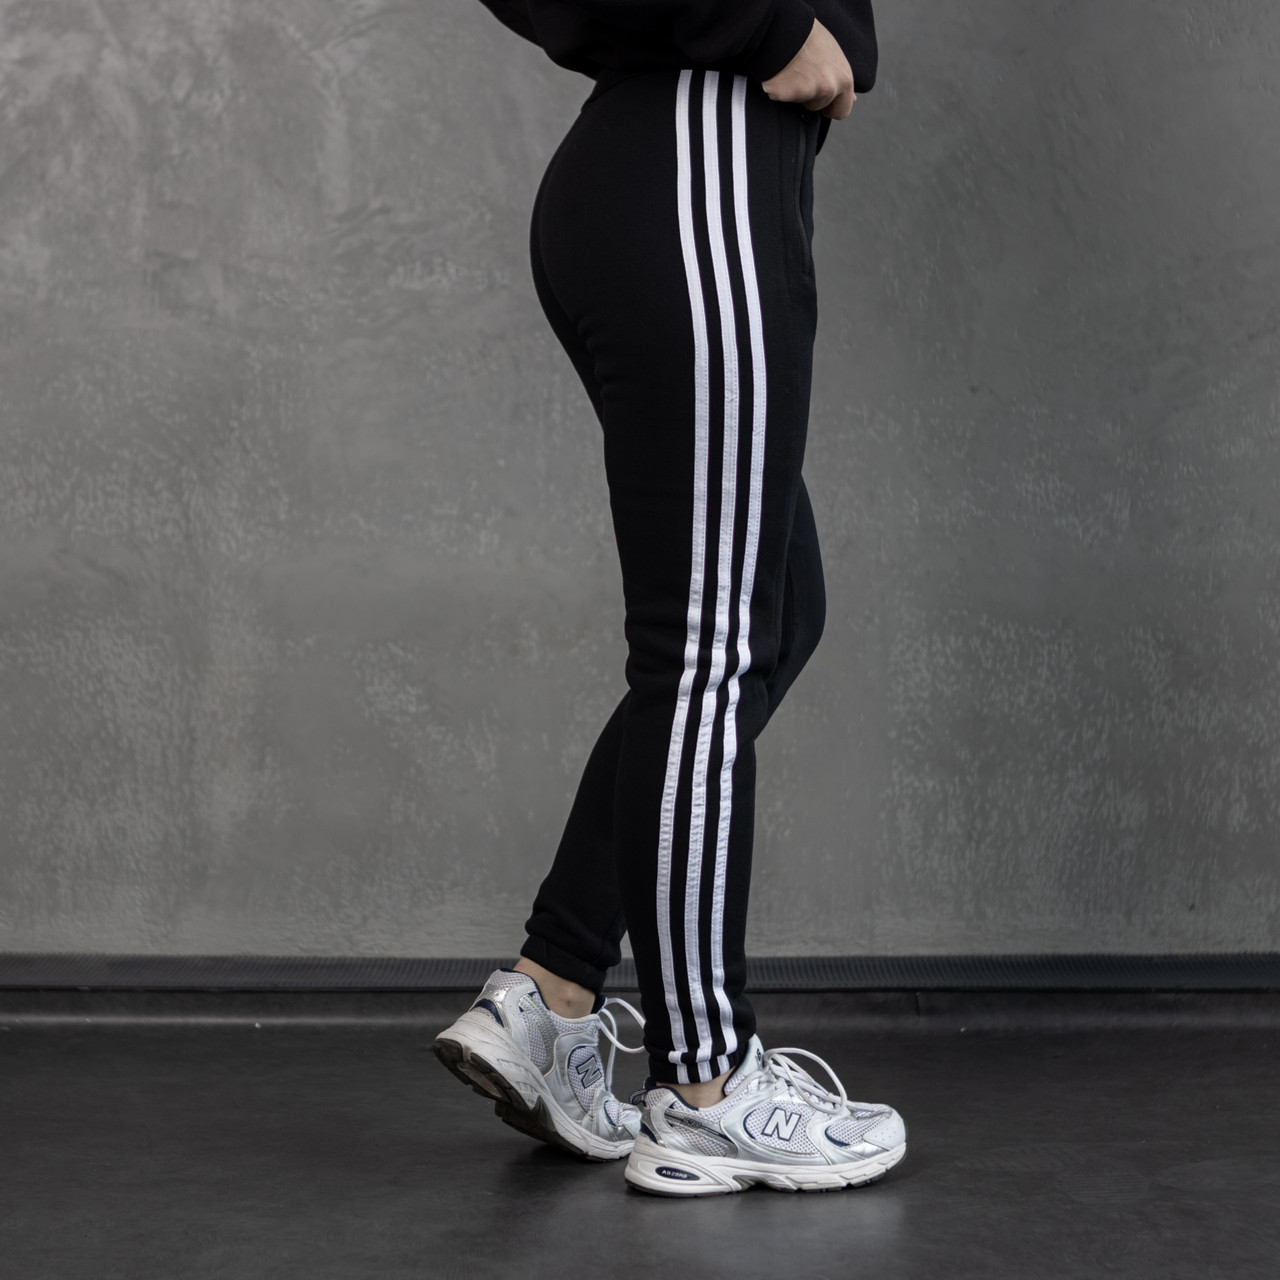 Зимові жіночі штани Adidas утеплені на флісі чорні | Спортивні штани теплі зима Адідас